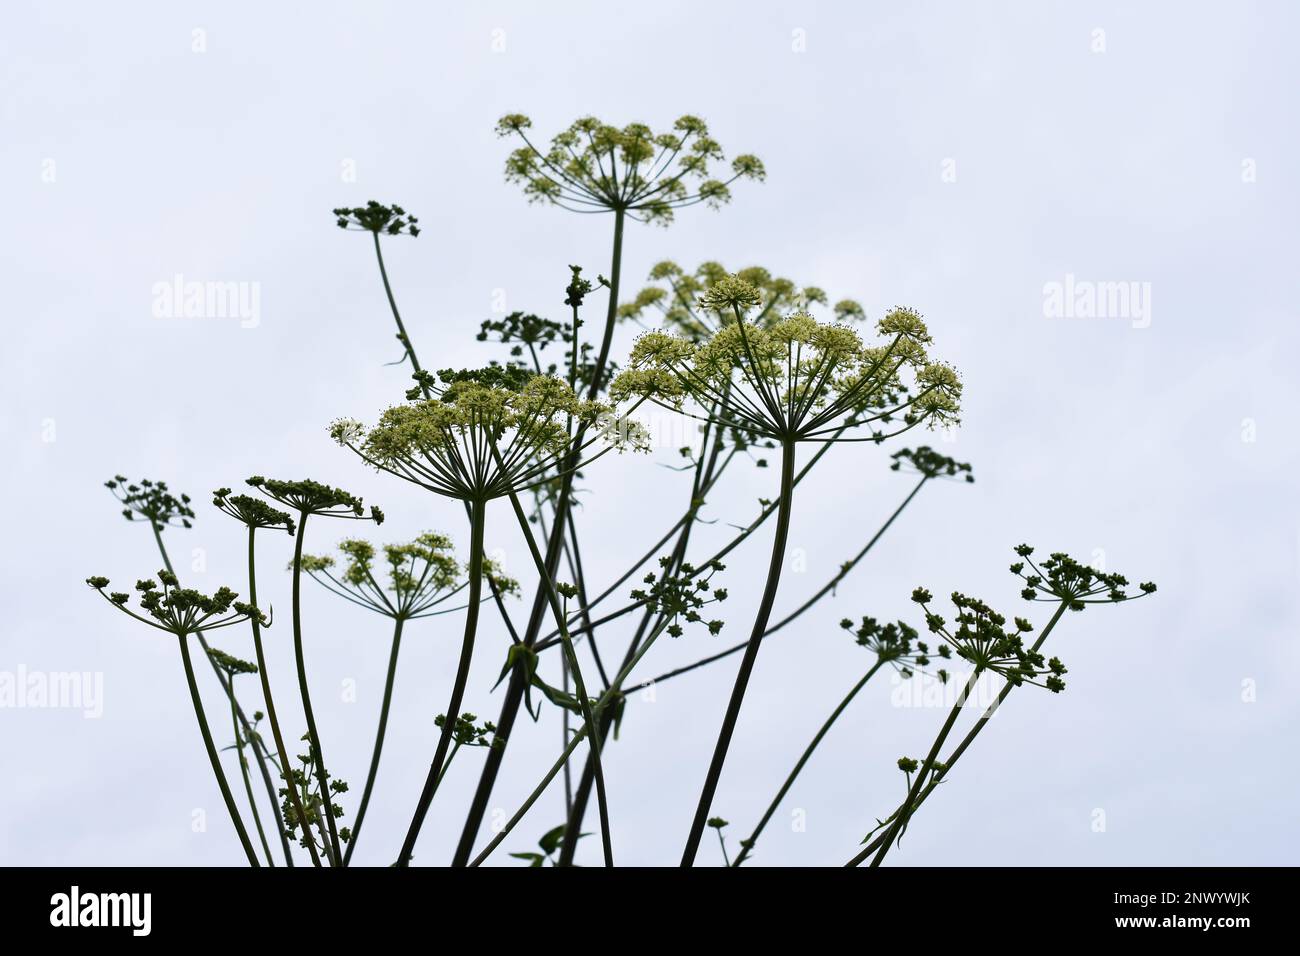 Die Samenkapseln einer umblütigen Pflanze, gesehen vor einem grauen Himmel Stockfoto